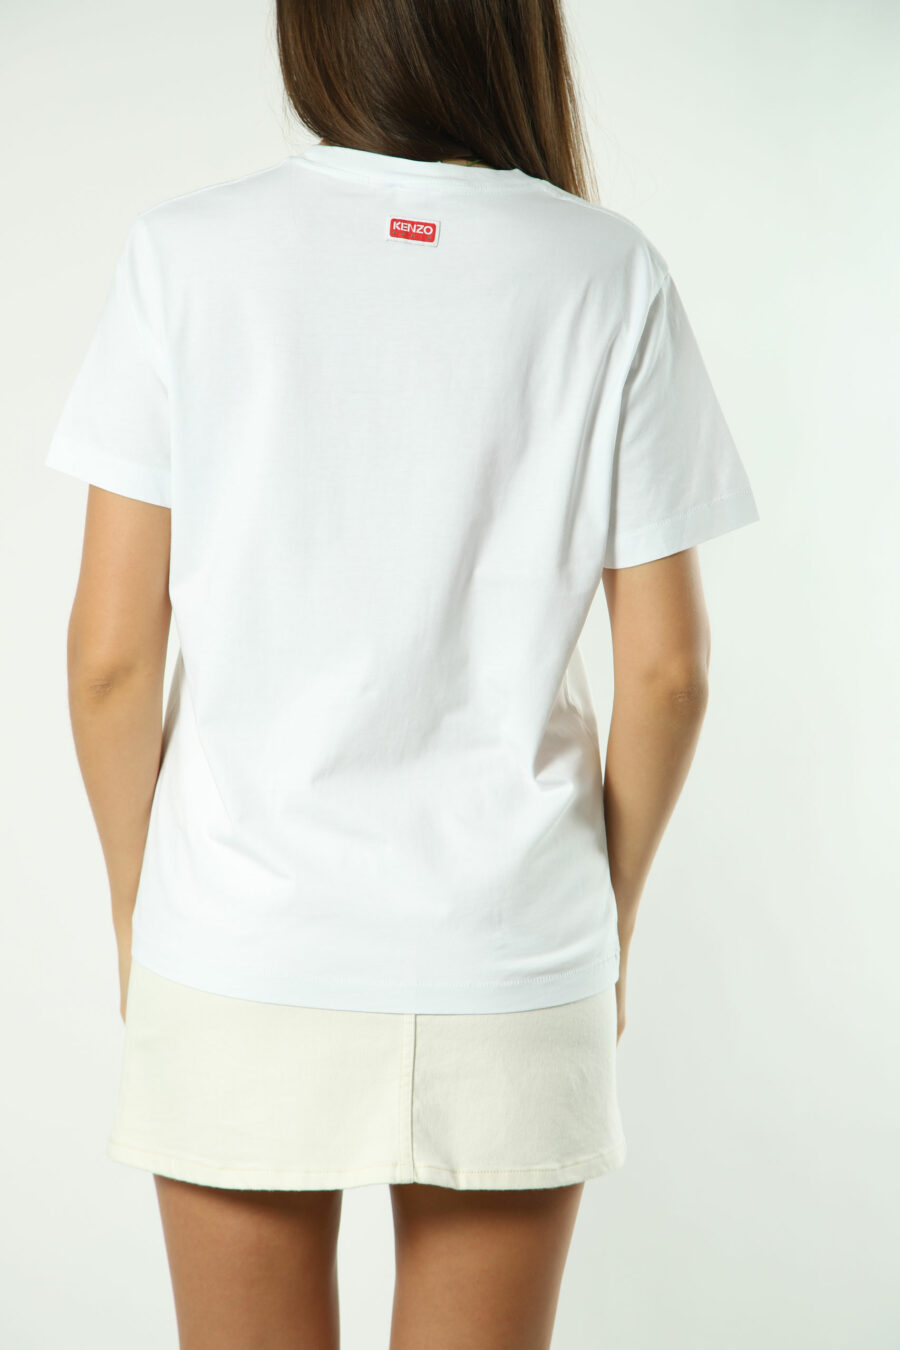 White T-shirt with orange flower maxilogo - Photos 1383